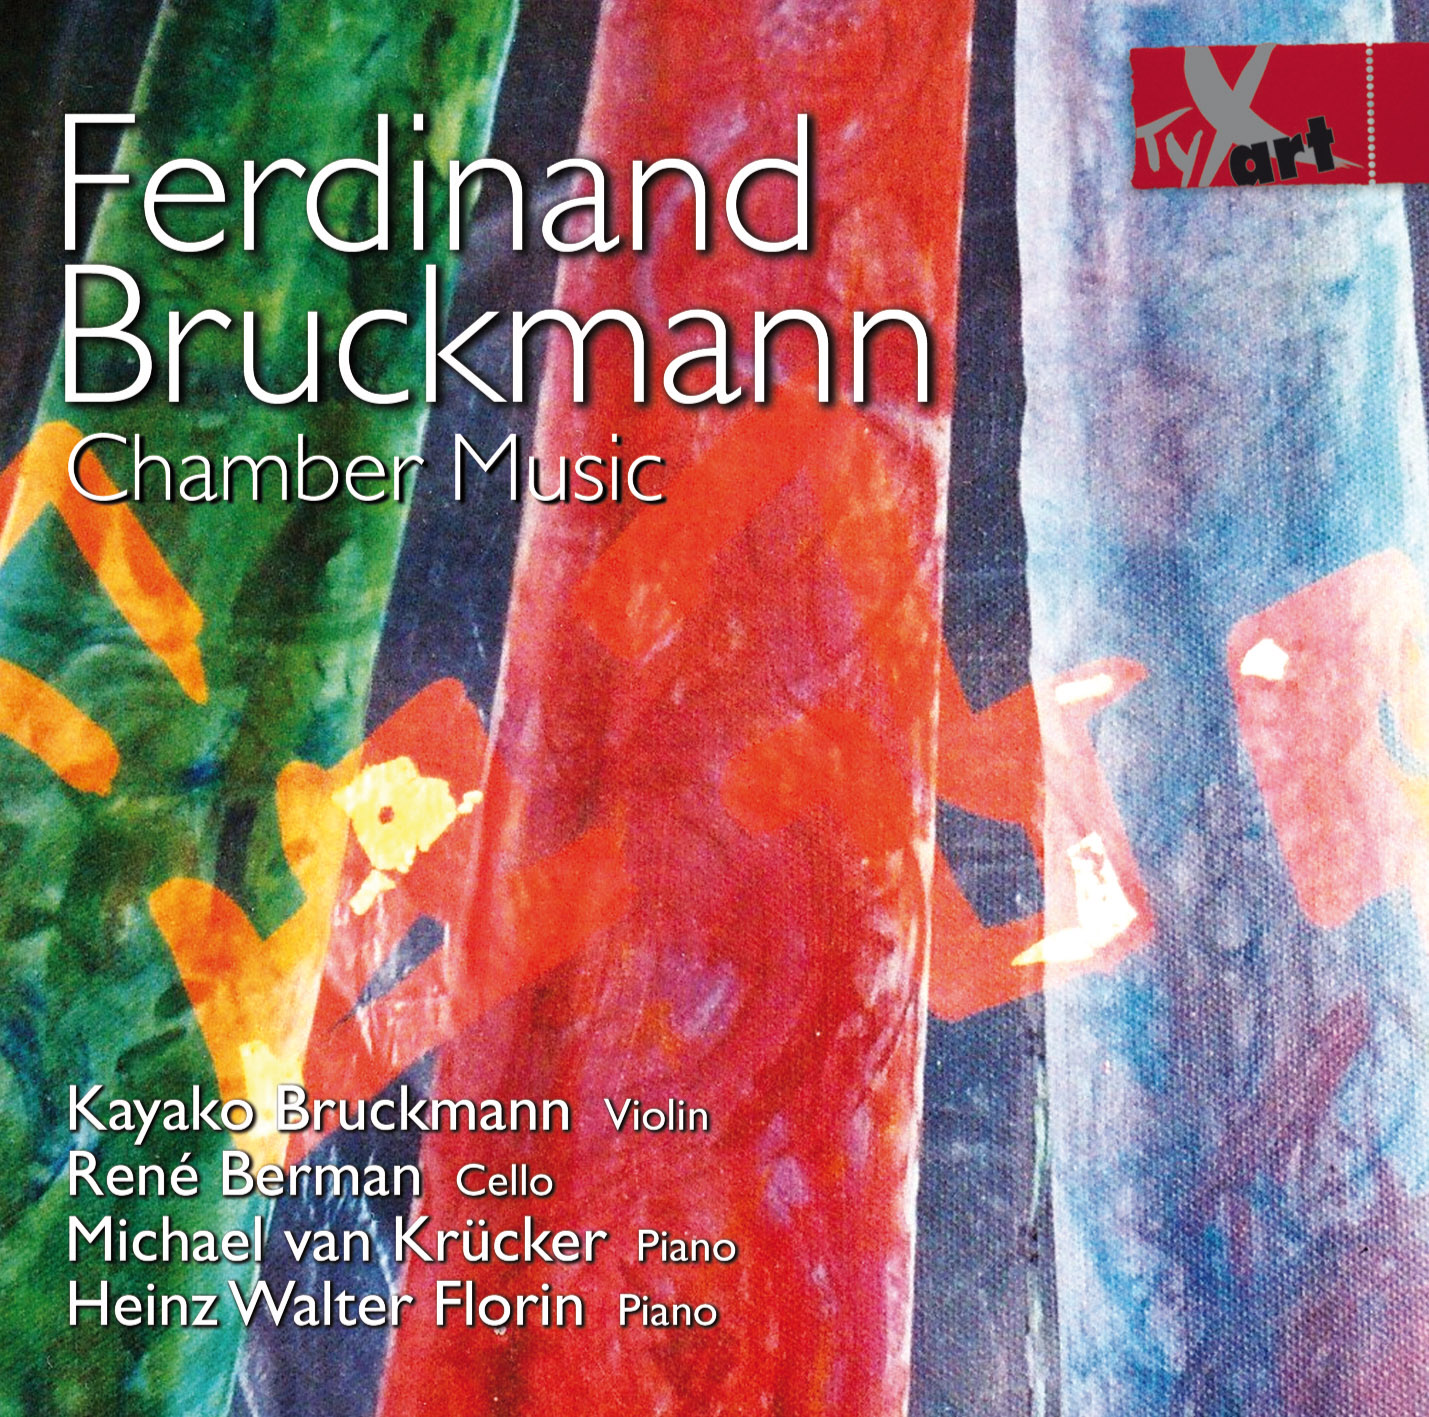 Ferdinand Bruckmann: Kammermusik